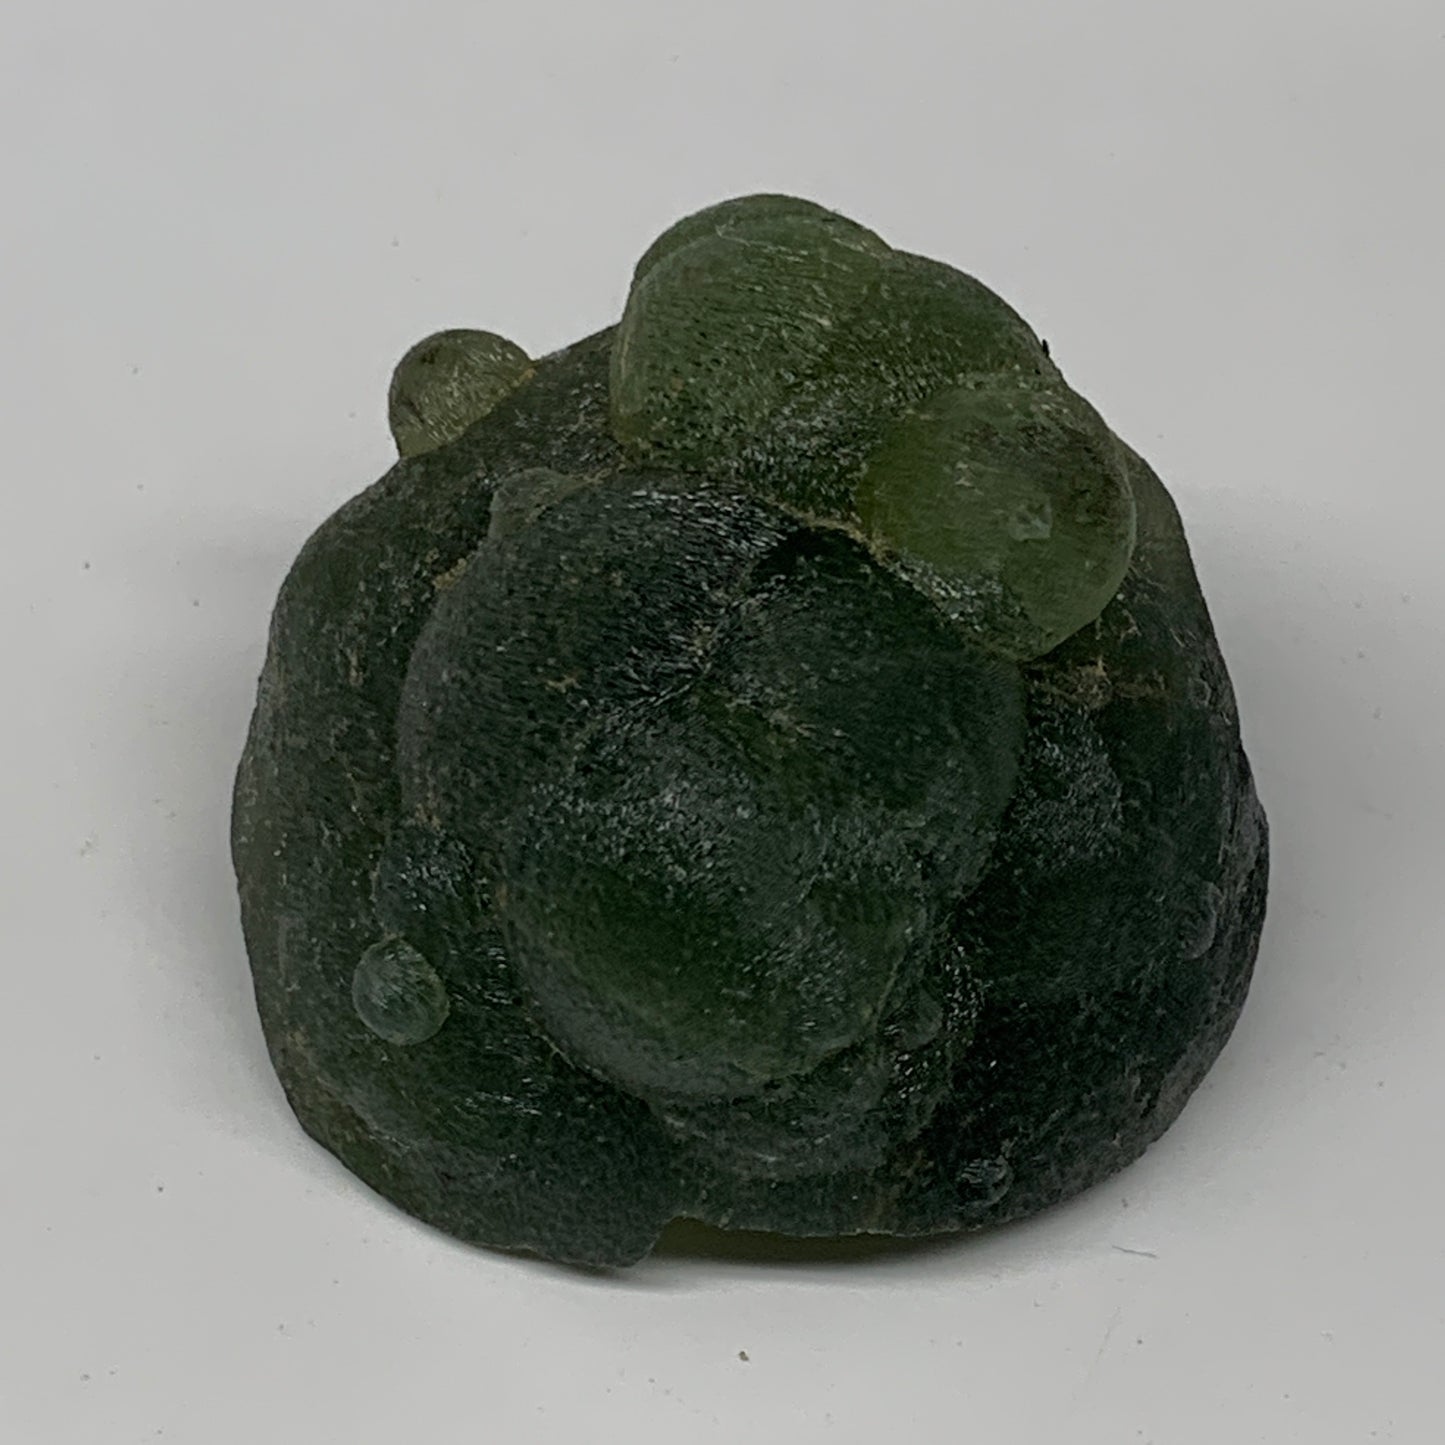 114.6g, 2"x2"x1.6", Prehnite With Epidote Inclusion Mineral Specimen, B7107